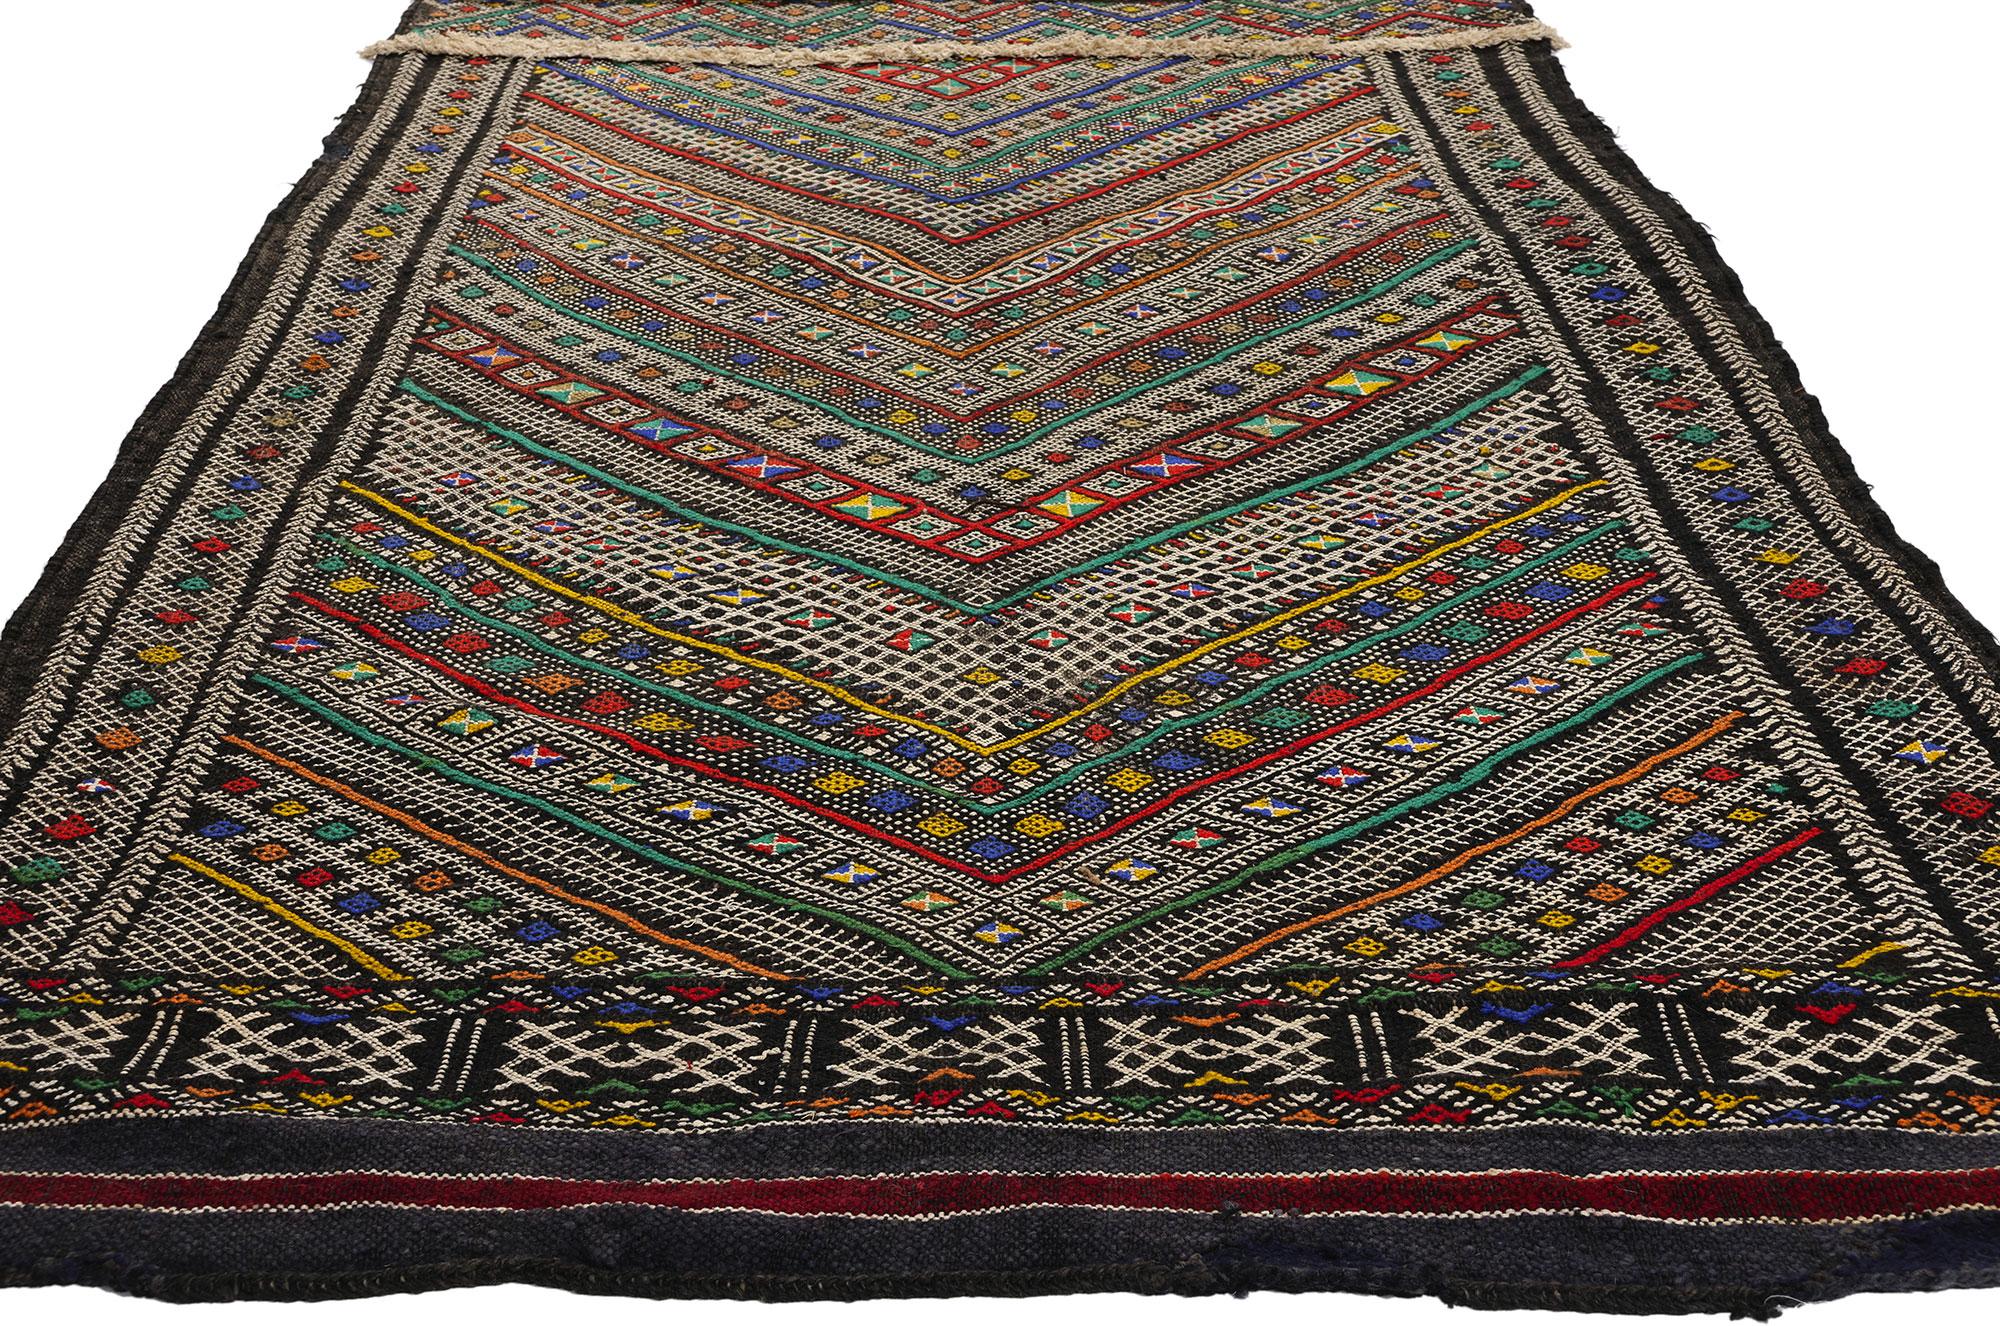 21847 Vintage Zemmour Marokkanischer Kilim-Teppich, 03'09 x 20'01. Dieser extralange, handgewebte marokkanische Kelimteppich ist ein Meisterwerk, das von den geschickten Kunsthandwerkern des Zemmour-Stammes im Mittleren Atlasgebirge in Marokko